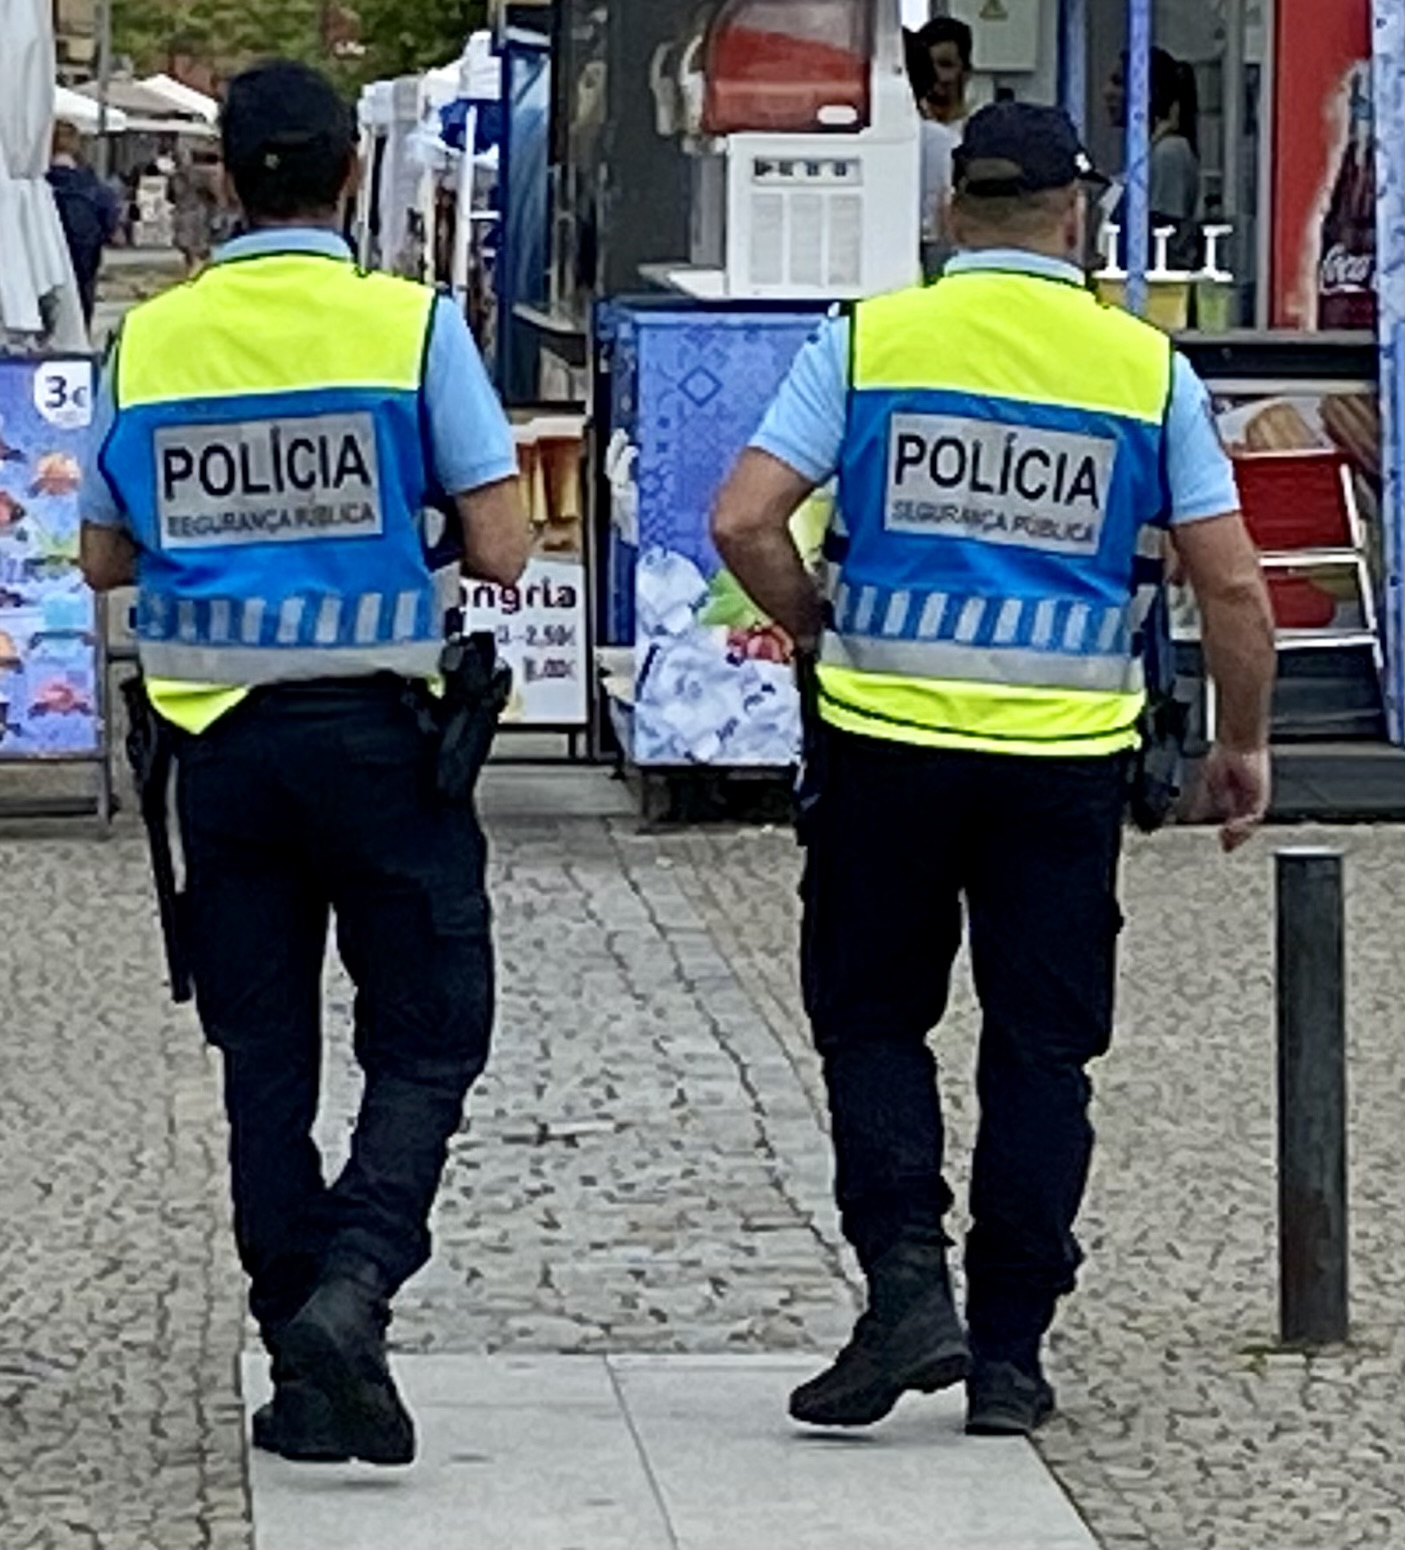 A real de Portugal: 450 brasileiros estão presos, a maioria, por tráfico de drogas - 